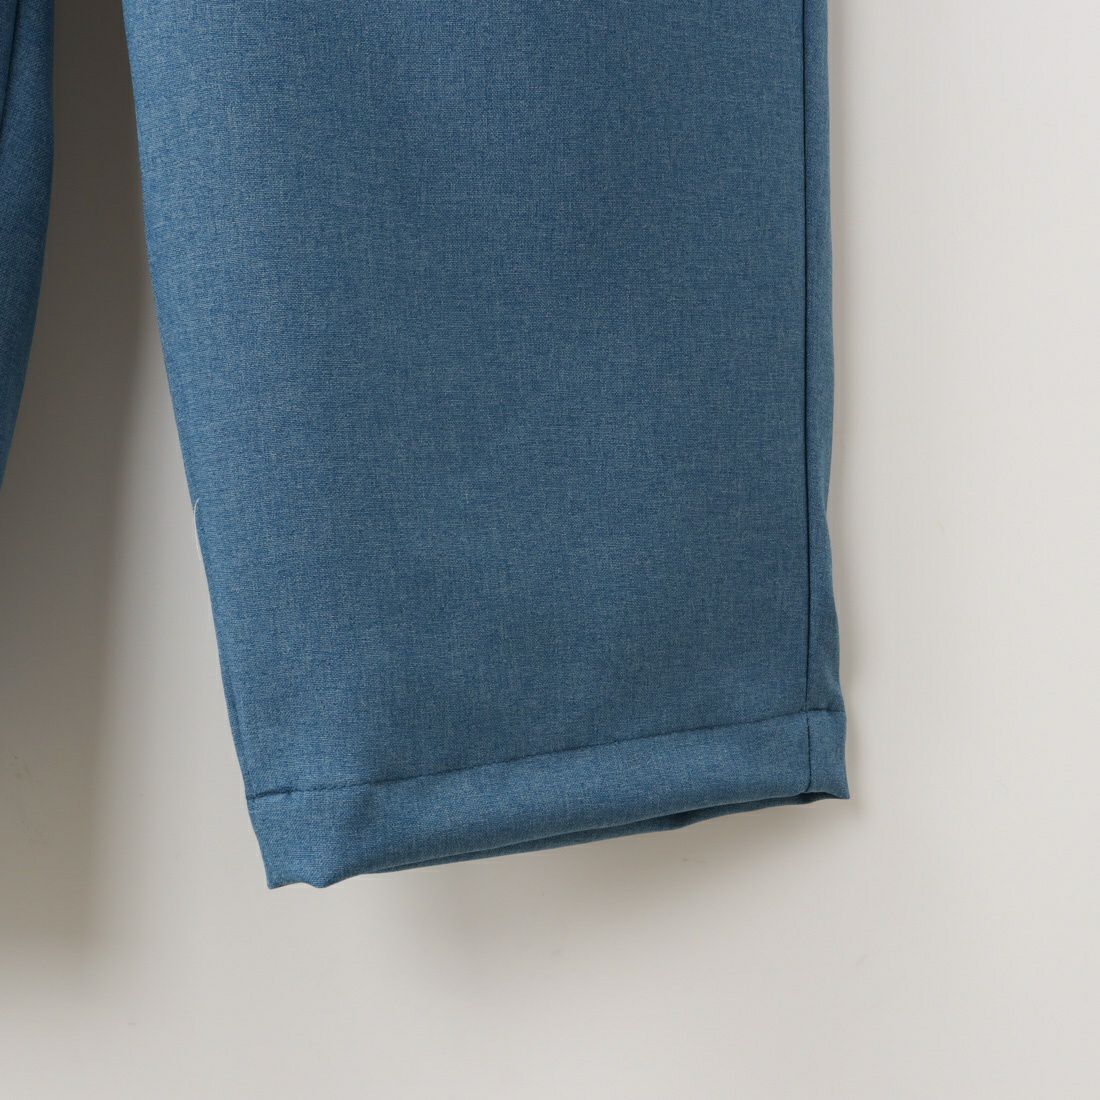 Jeans Factory Clothes [ジーンズファクトリークローズ] トロピカルストレッチソリッドパンツ [JFC-231-026] 05 BLUE